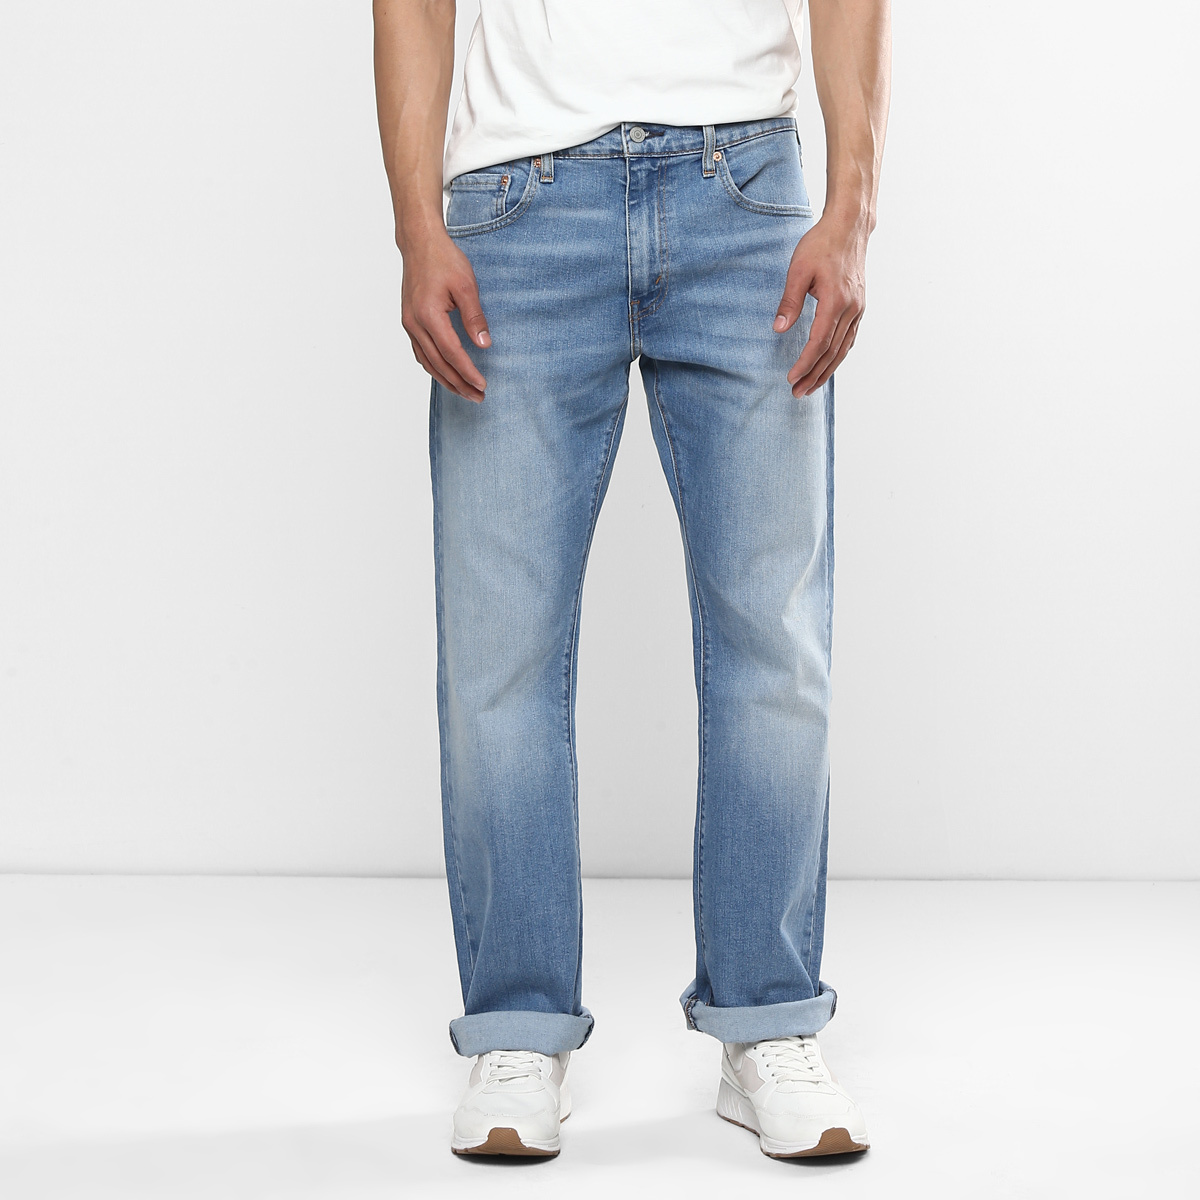 LEVIS MEN Single Length Jeans 16382-0007 Blue 30